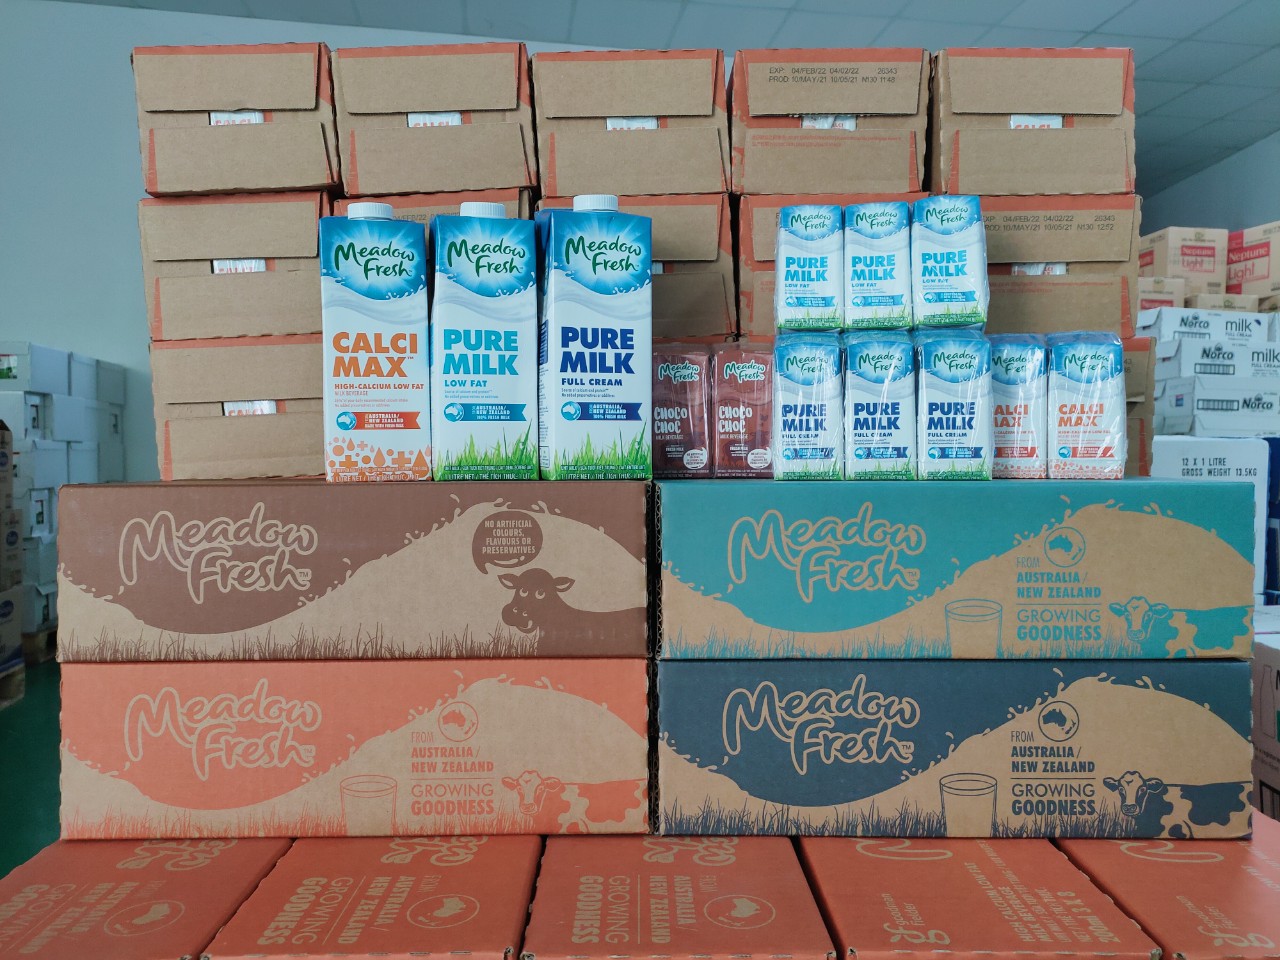 Milkman cung cấp đa dạng các mặt hàng sữa nhập khẩu